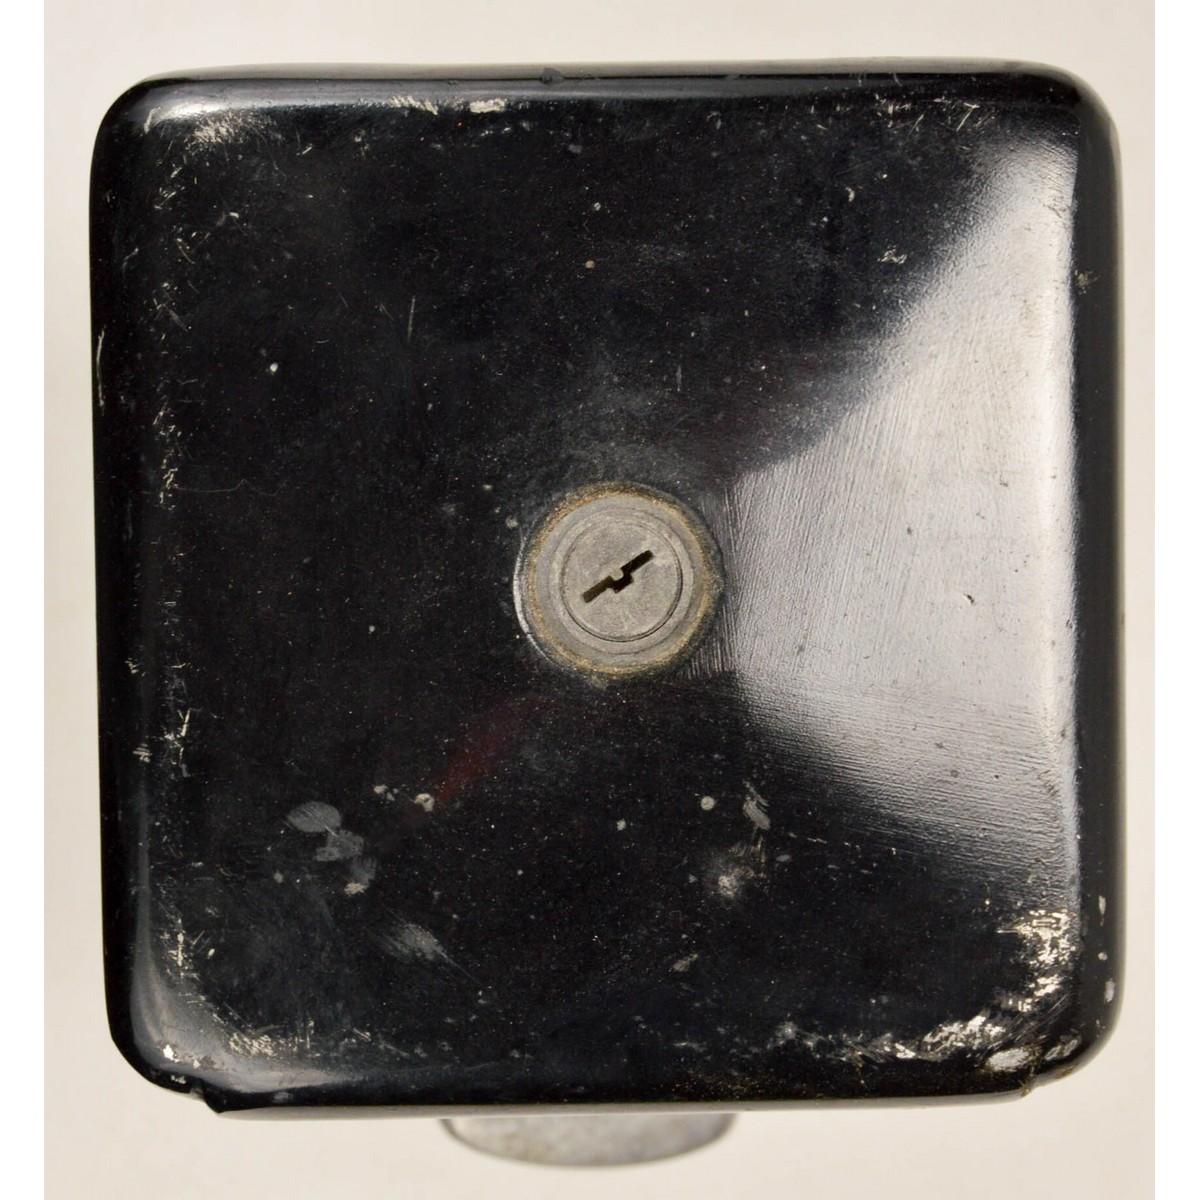 Borax Coin Op 1 Cent Soap Dispenser